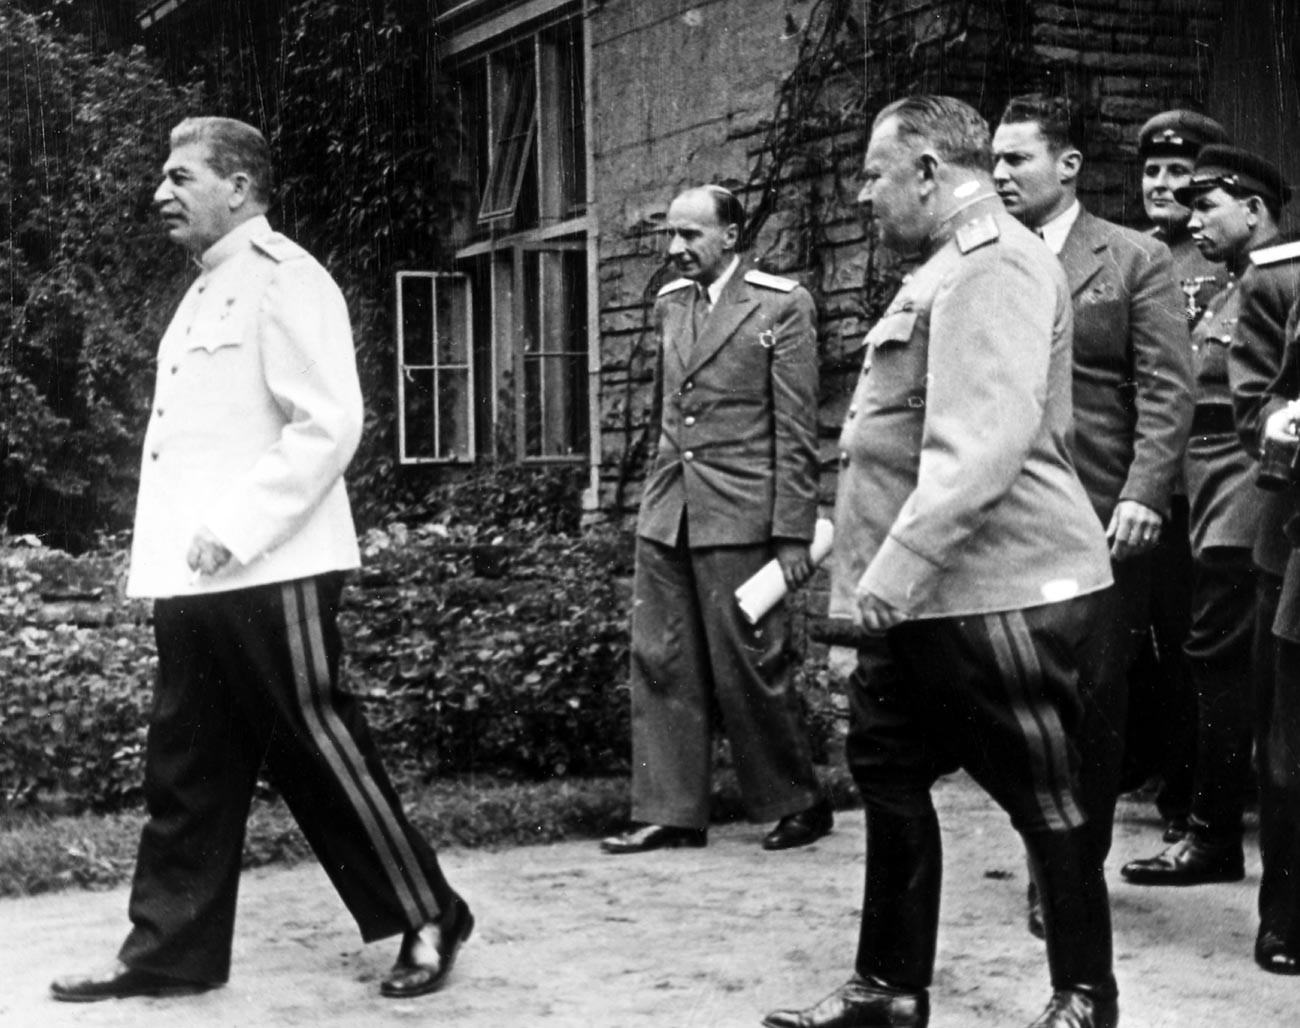 Советскиот водач Јосиф Сталин во бела војничка блуза со останатите воени лица на Постдамската конференција во јули 1945 година.
